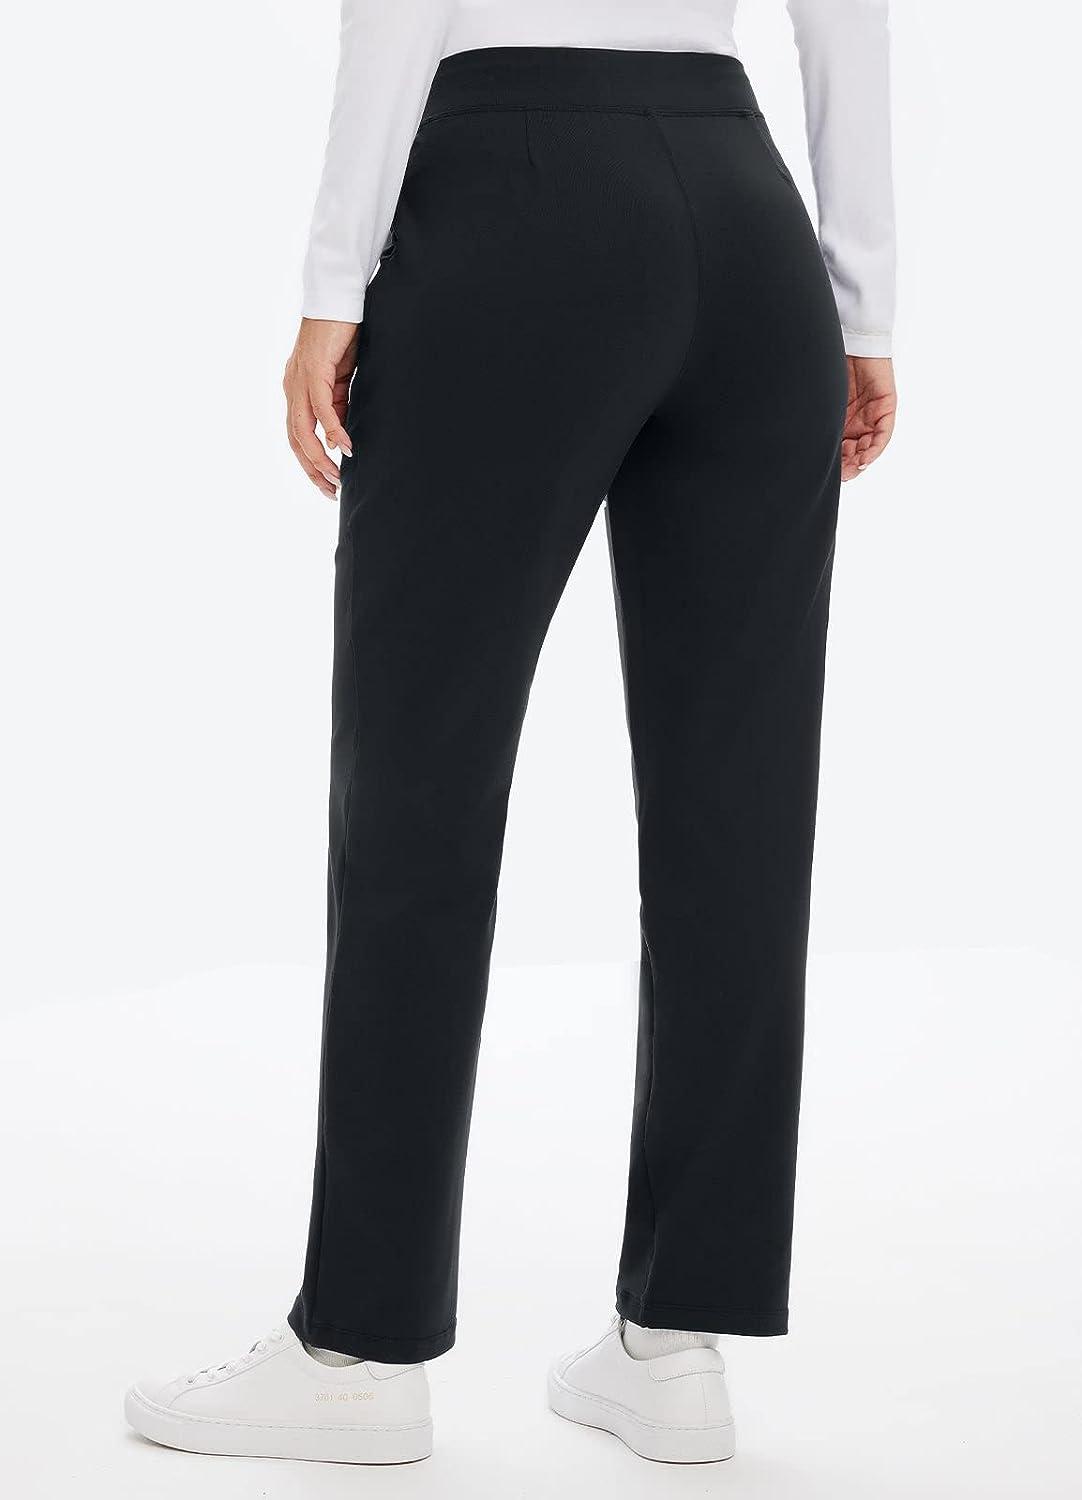 Grey Baleaf Women's Trousers